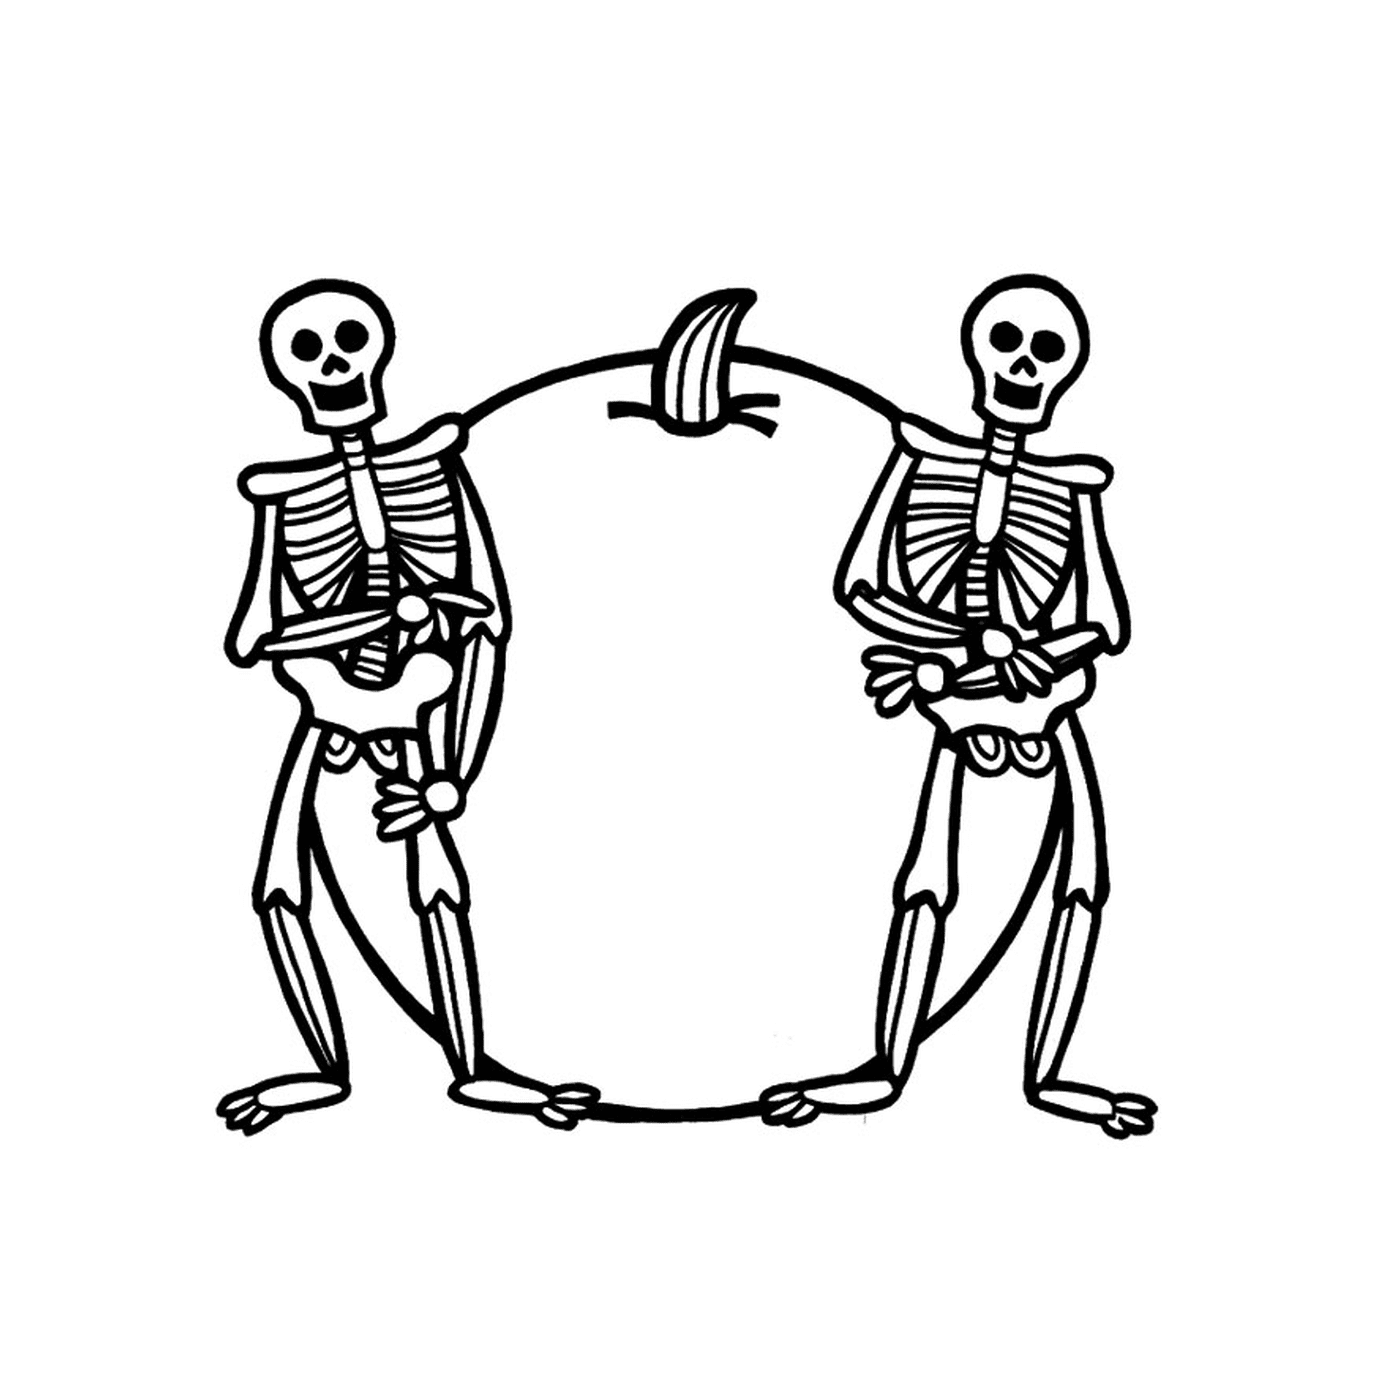  Dos esqueletos al lado de una manzana 